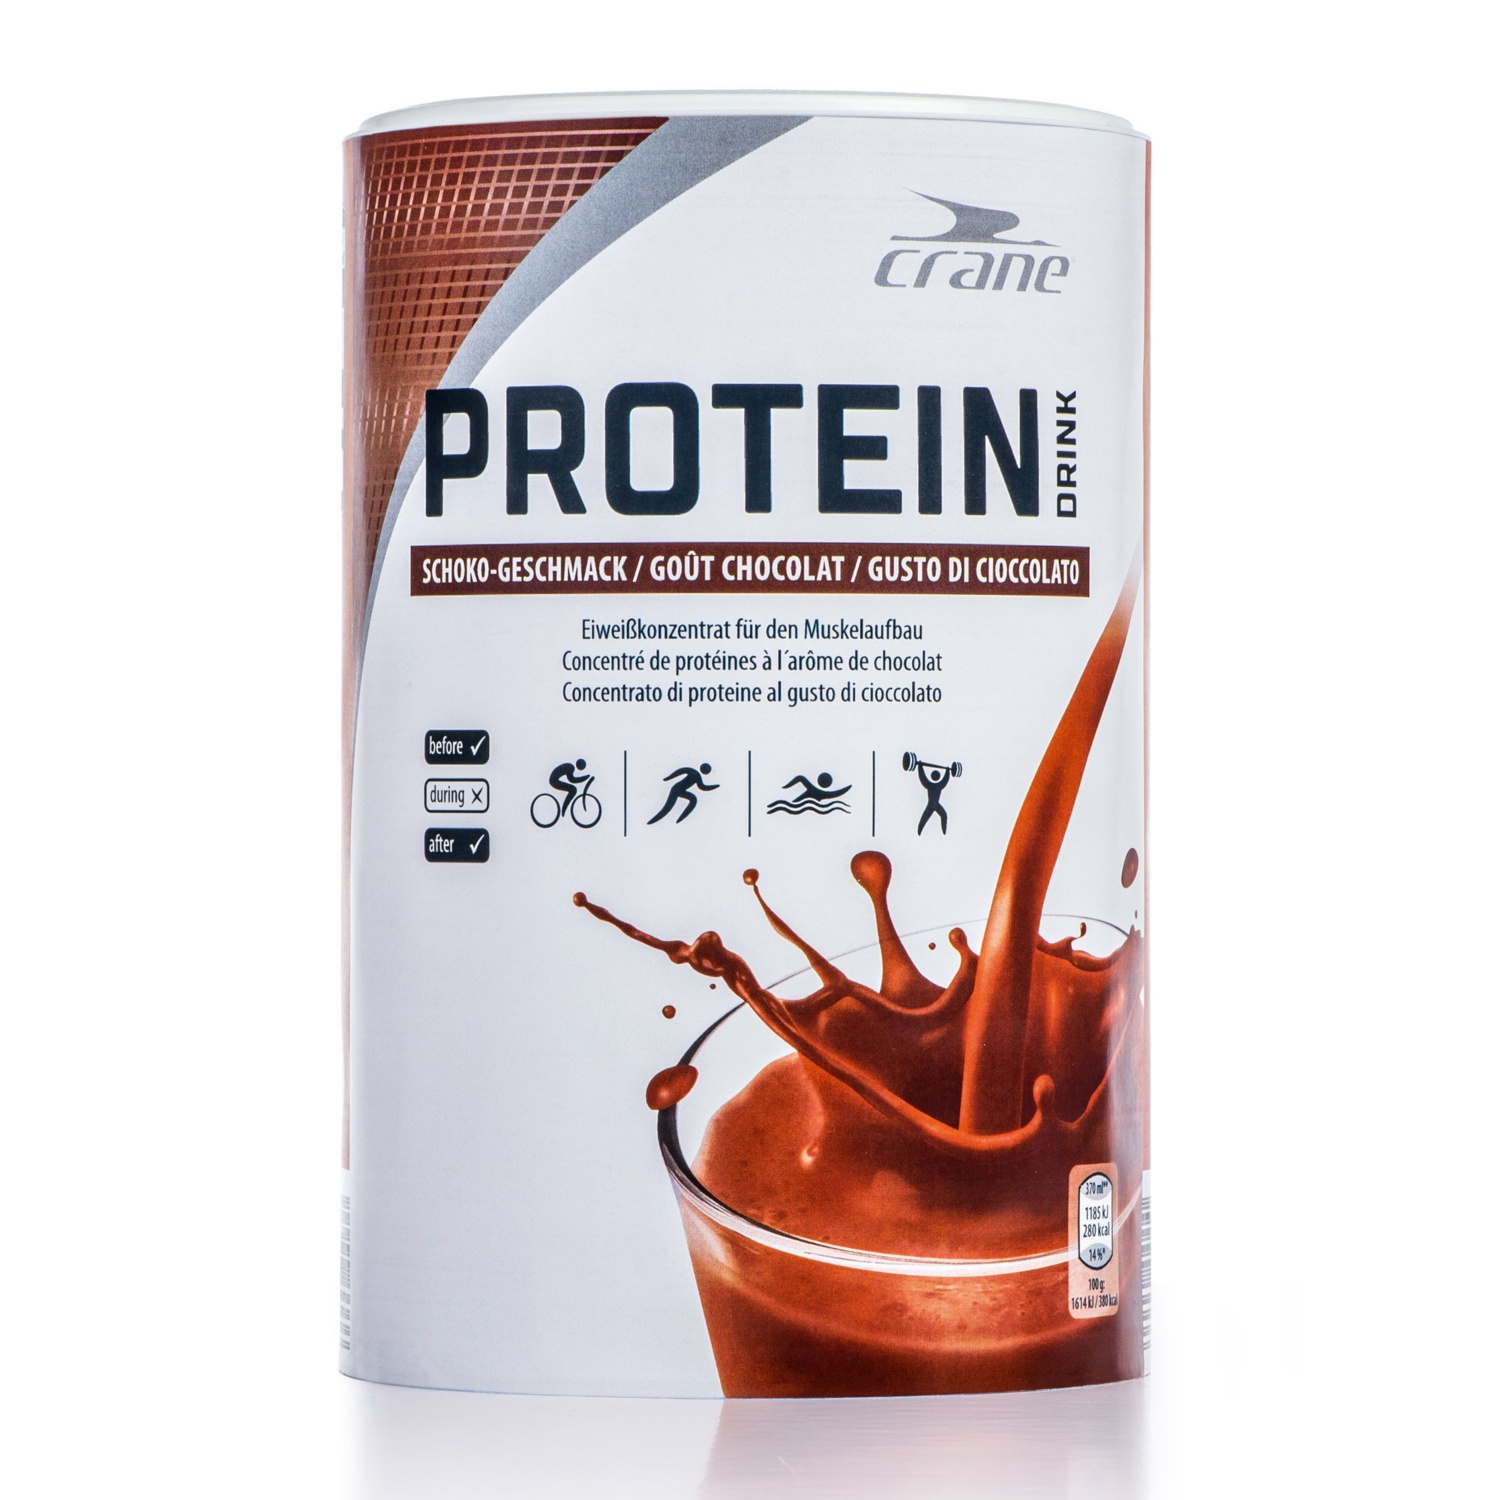 CRANE Protein Drink, Schokolade